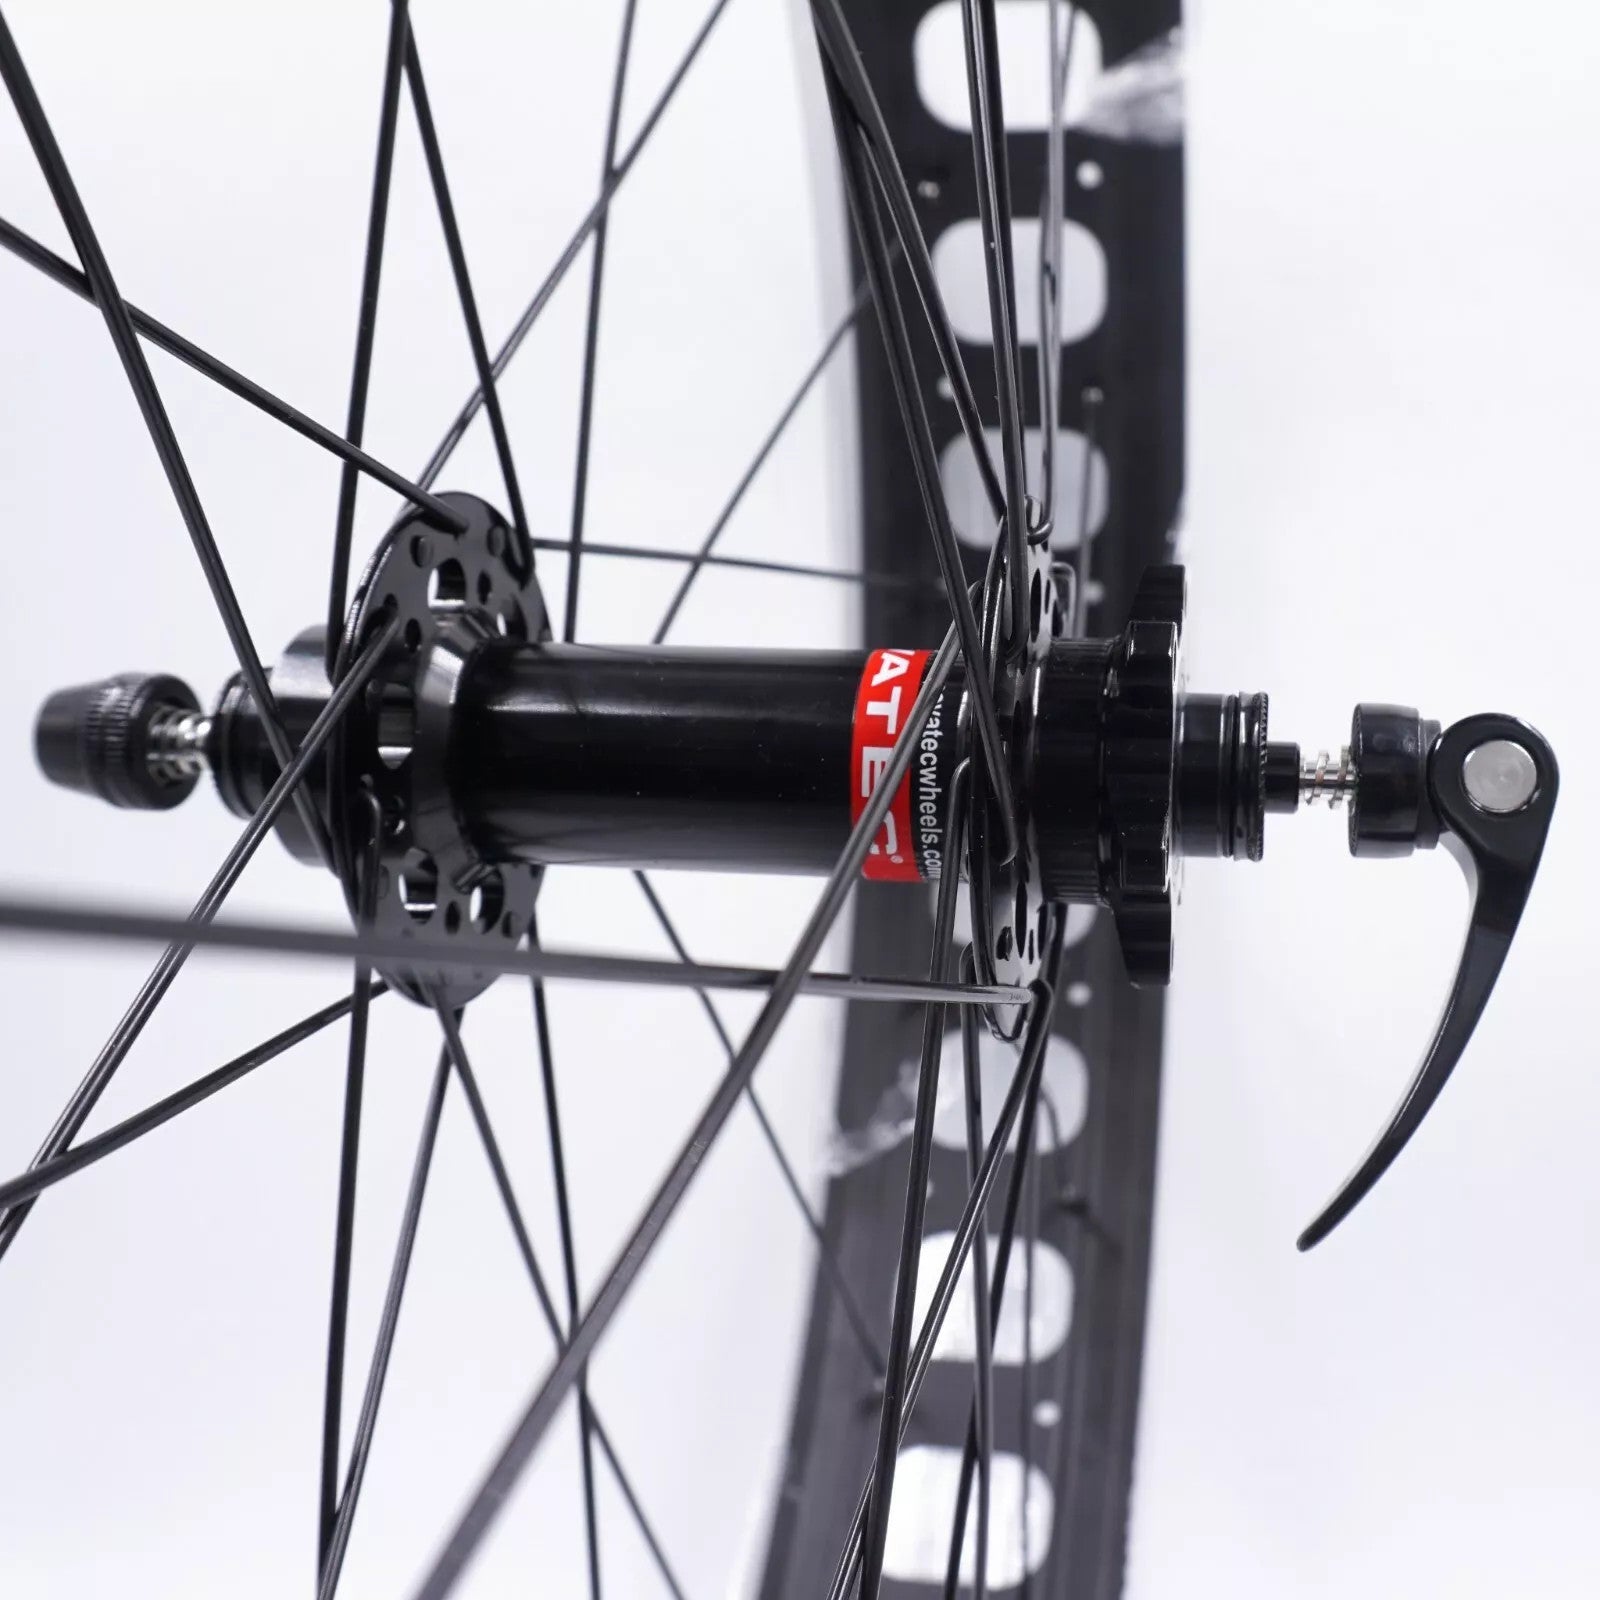 Alex Blizzerk 80 FRONT QR 9x135mm Fat Bike Wheel - The Bikesmiths